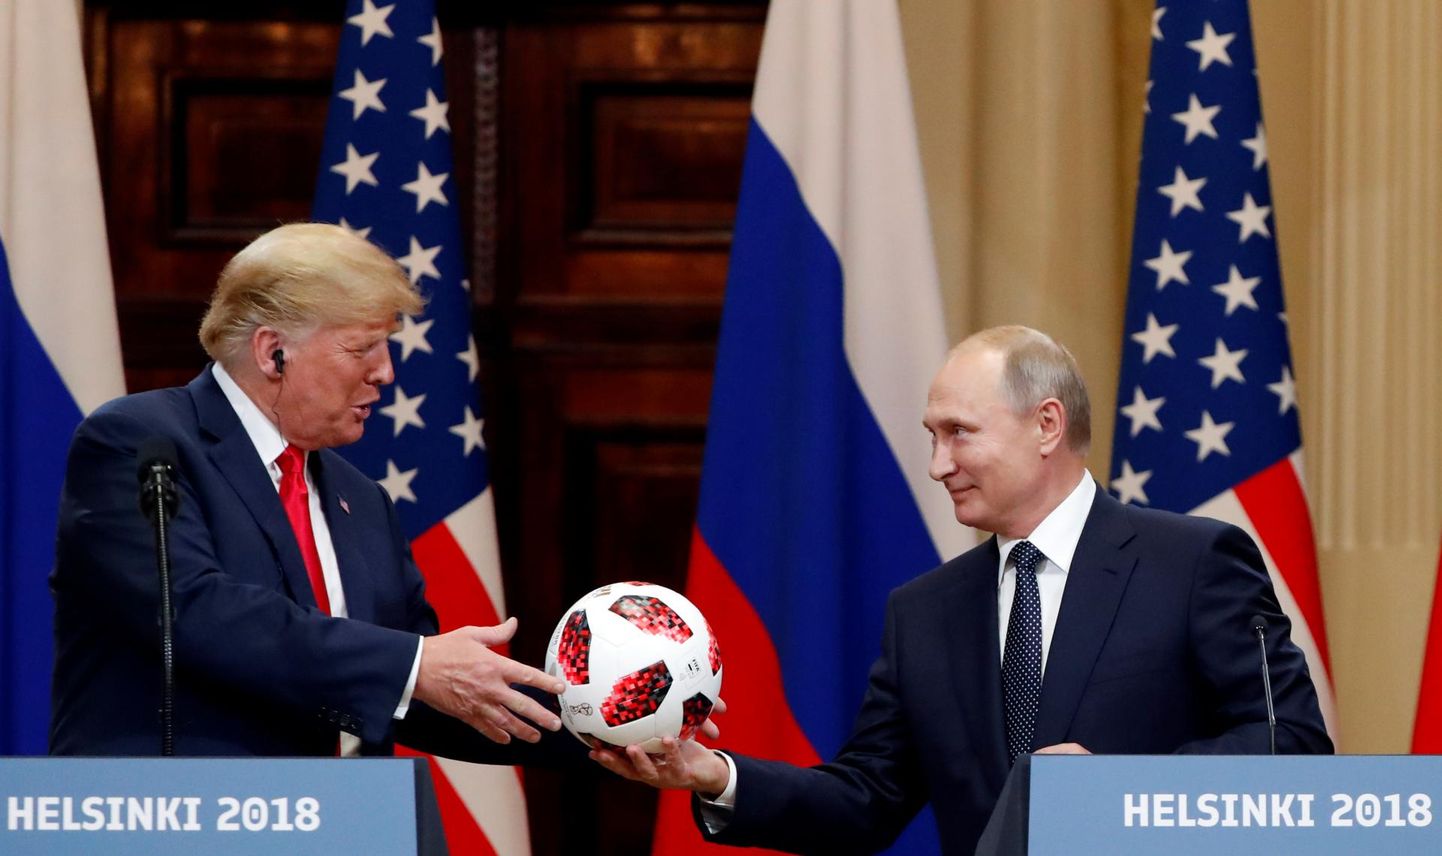 Vene president Vladimir Putin kinkis USA riigipeale Donald Trumpile Venemaal peetud jalgpalli maailmameistrivõistlusel kasutatud palli. Putin lisas, et kahe riigi suhetes on pall USA poolel.